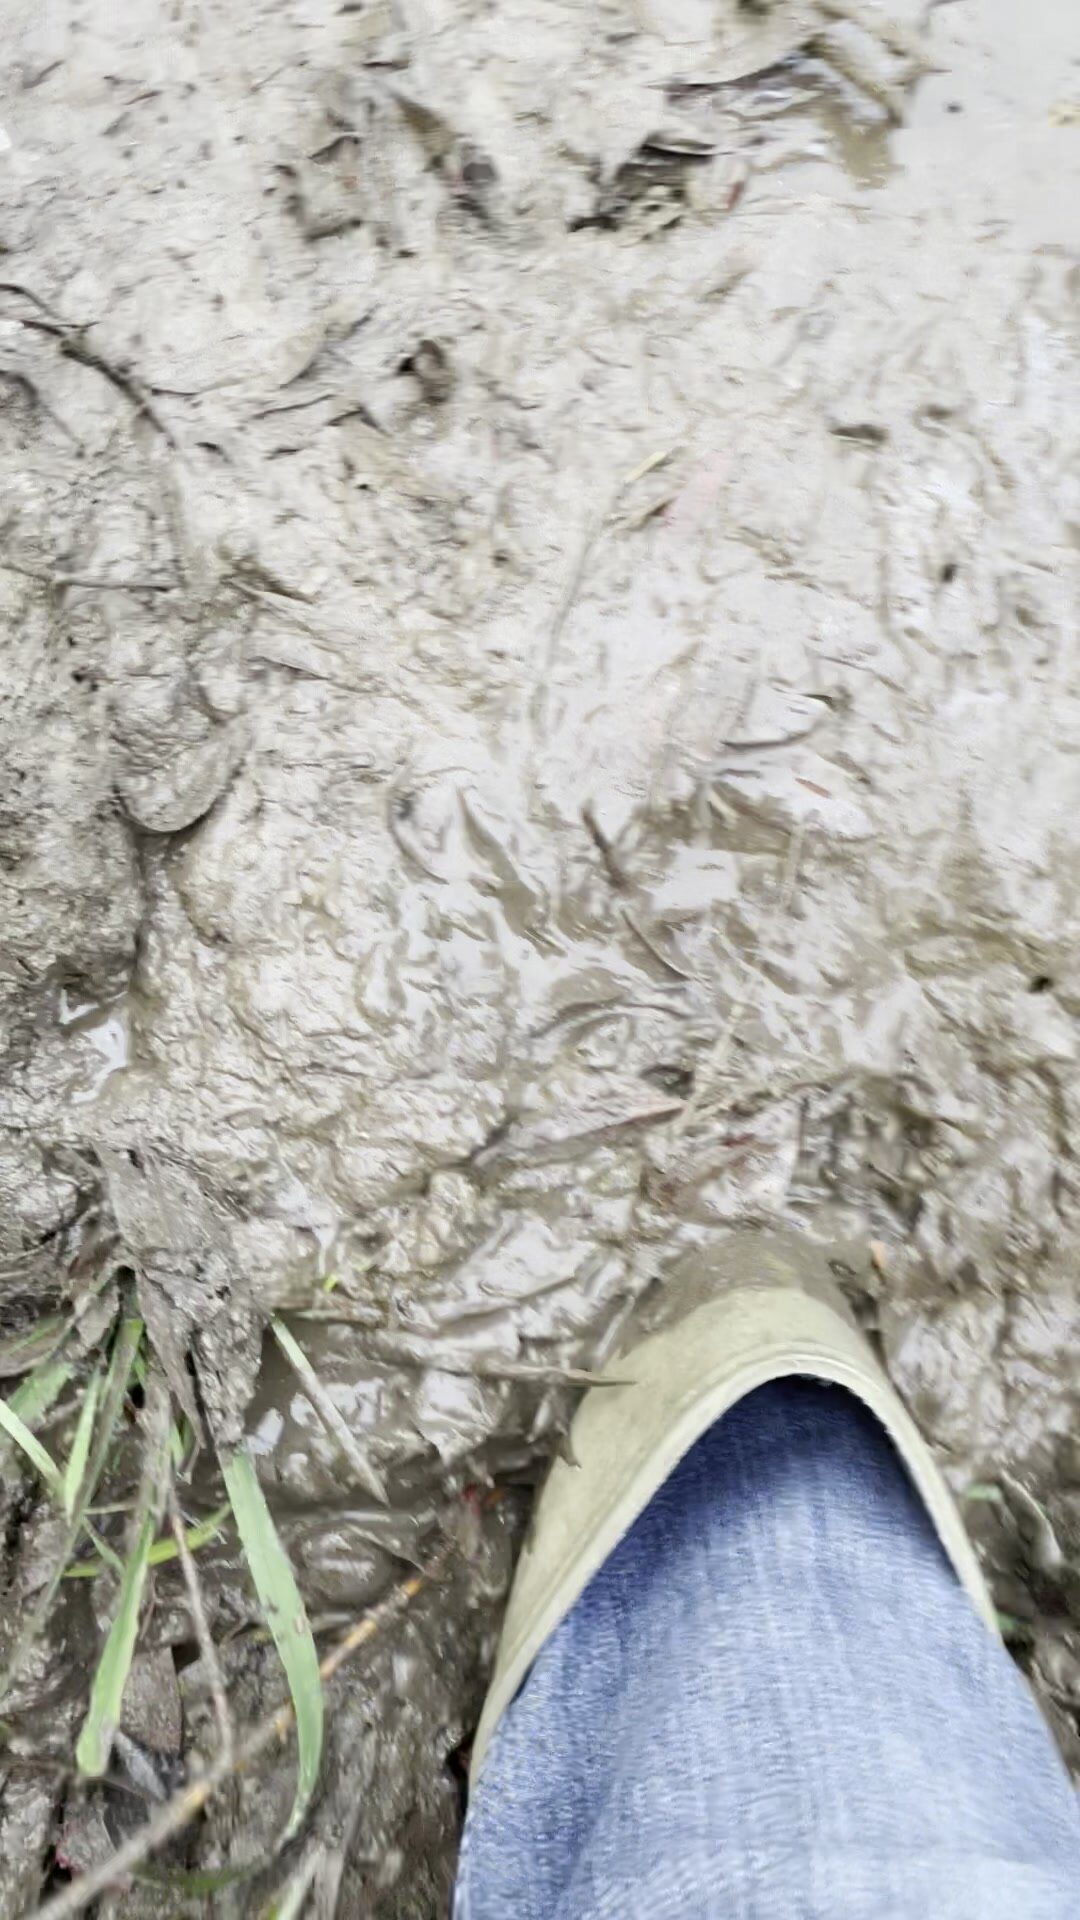 Muddy fun